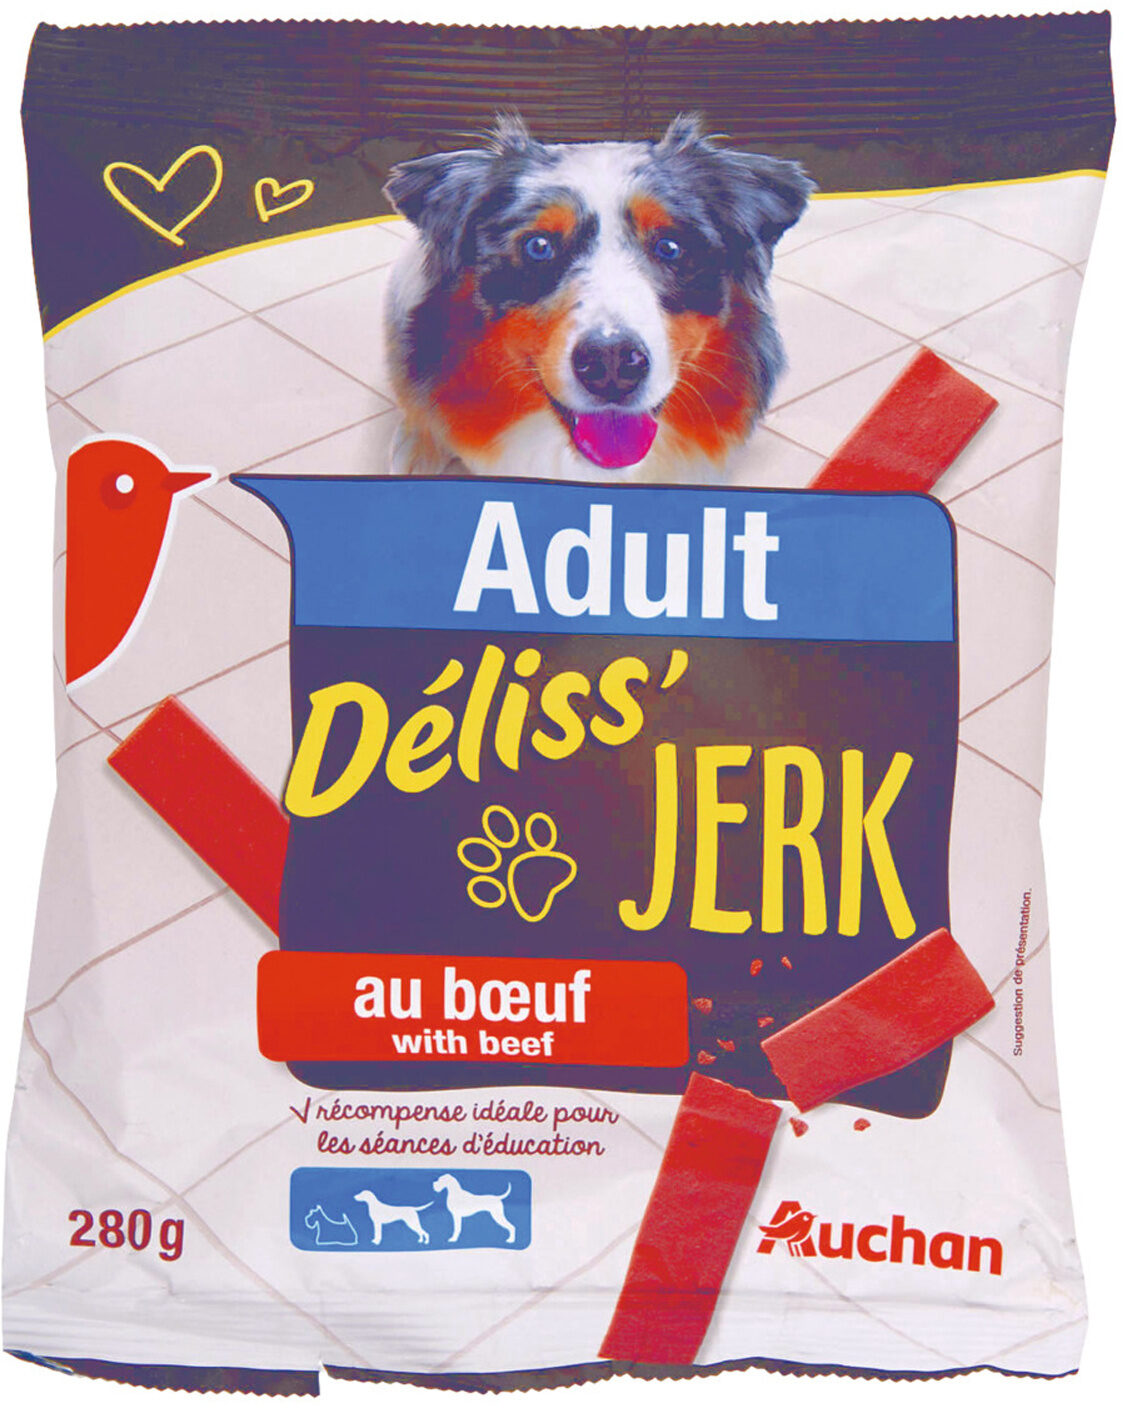 Adult - Déliss'Jerk - au boeuf - Produit - fr